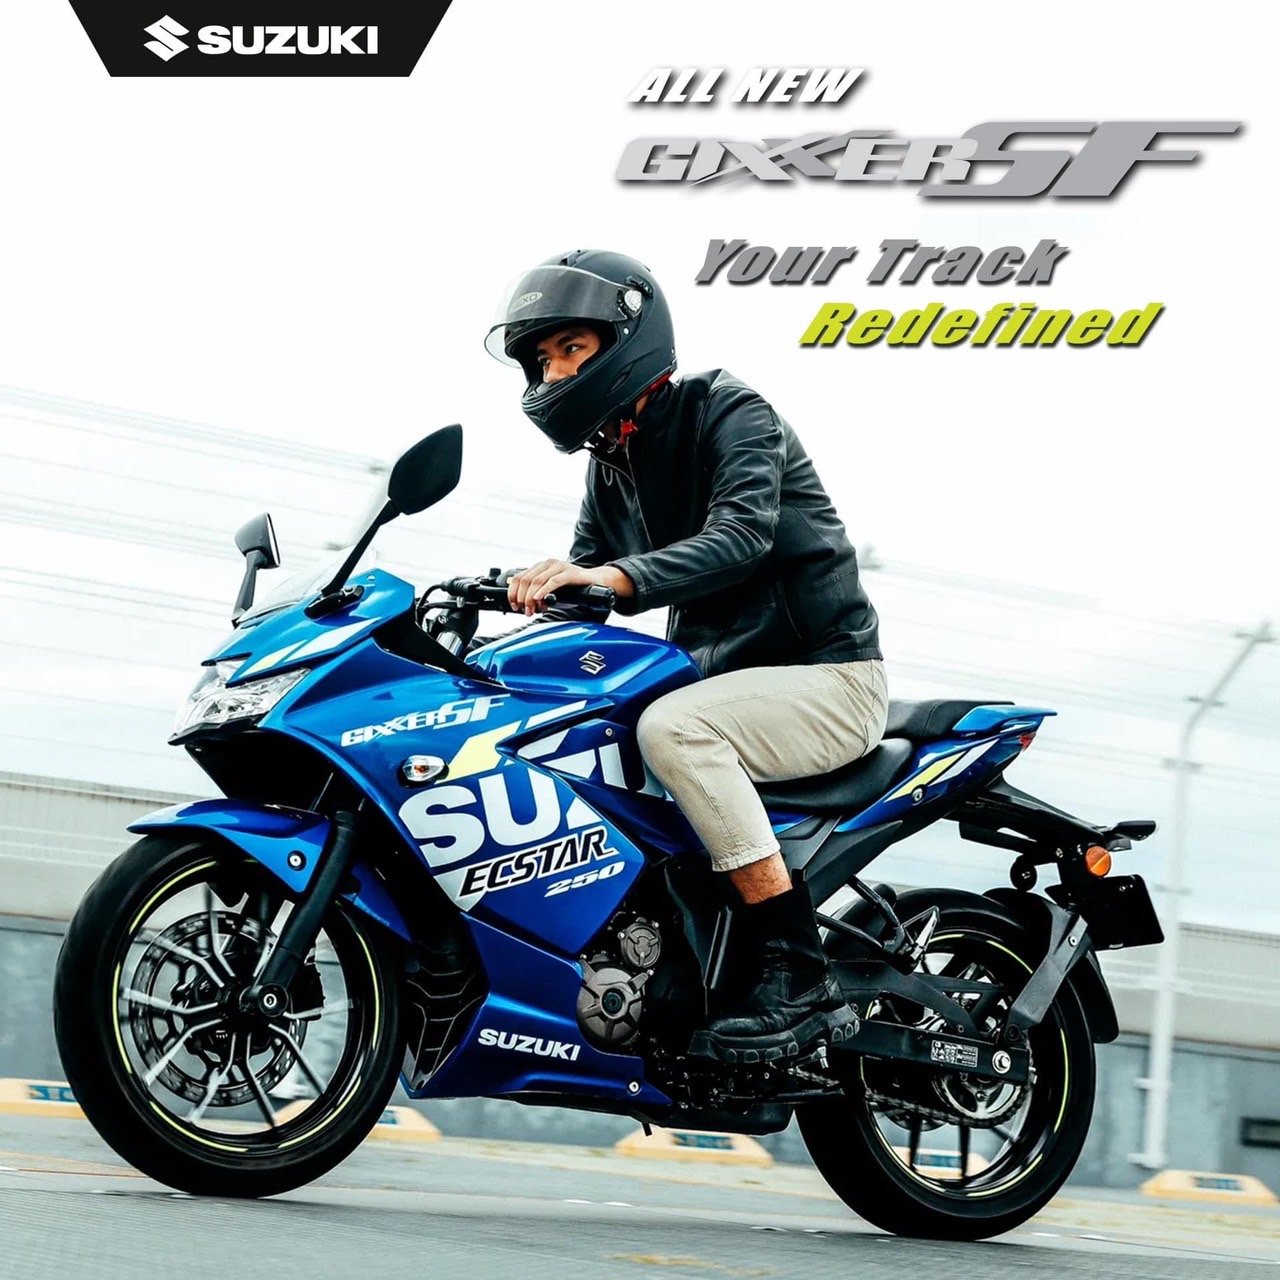 6 เซ็นเซอร์อัจฉริยะ กับ All New Suzuki Gixxer SF EP:2